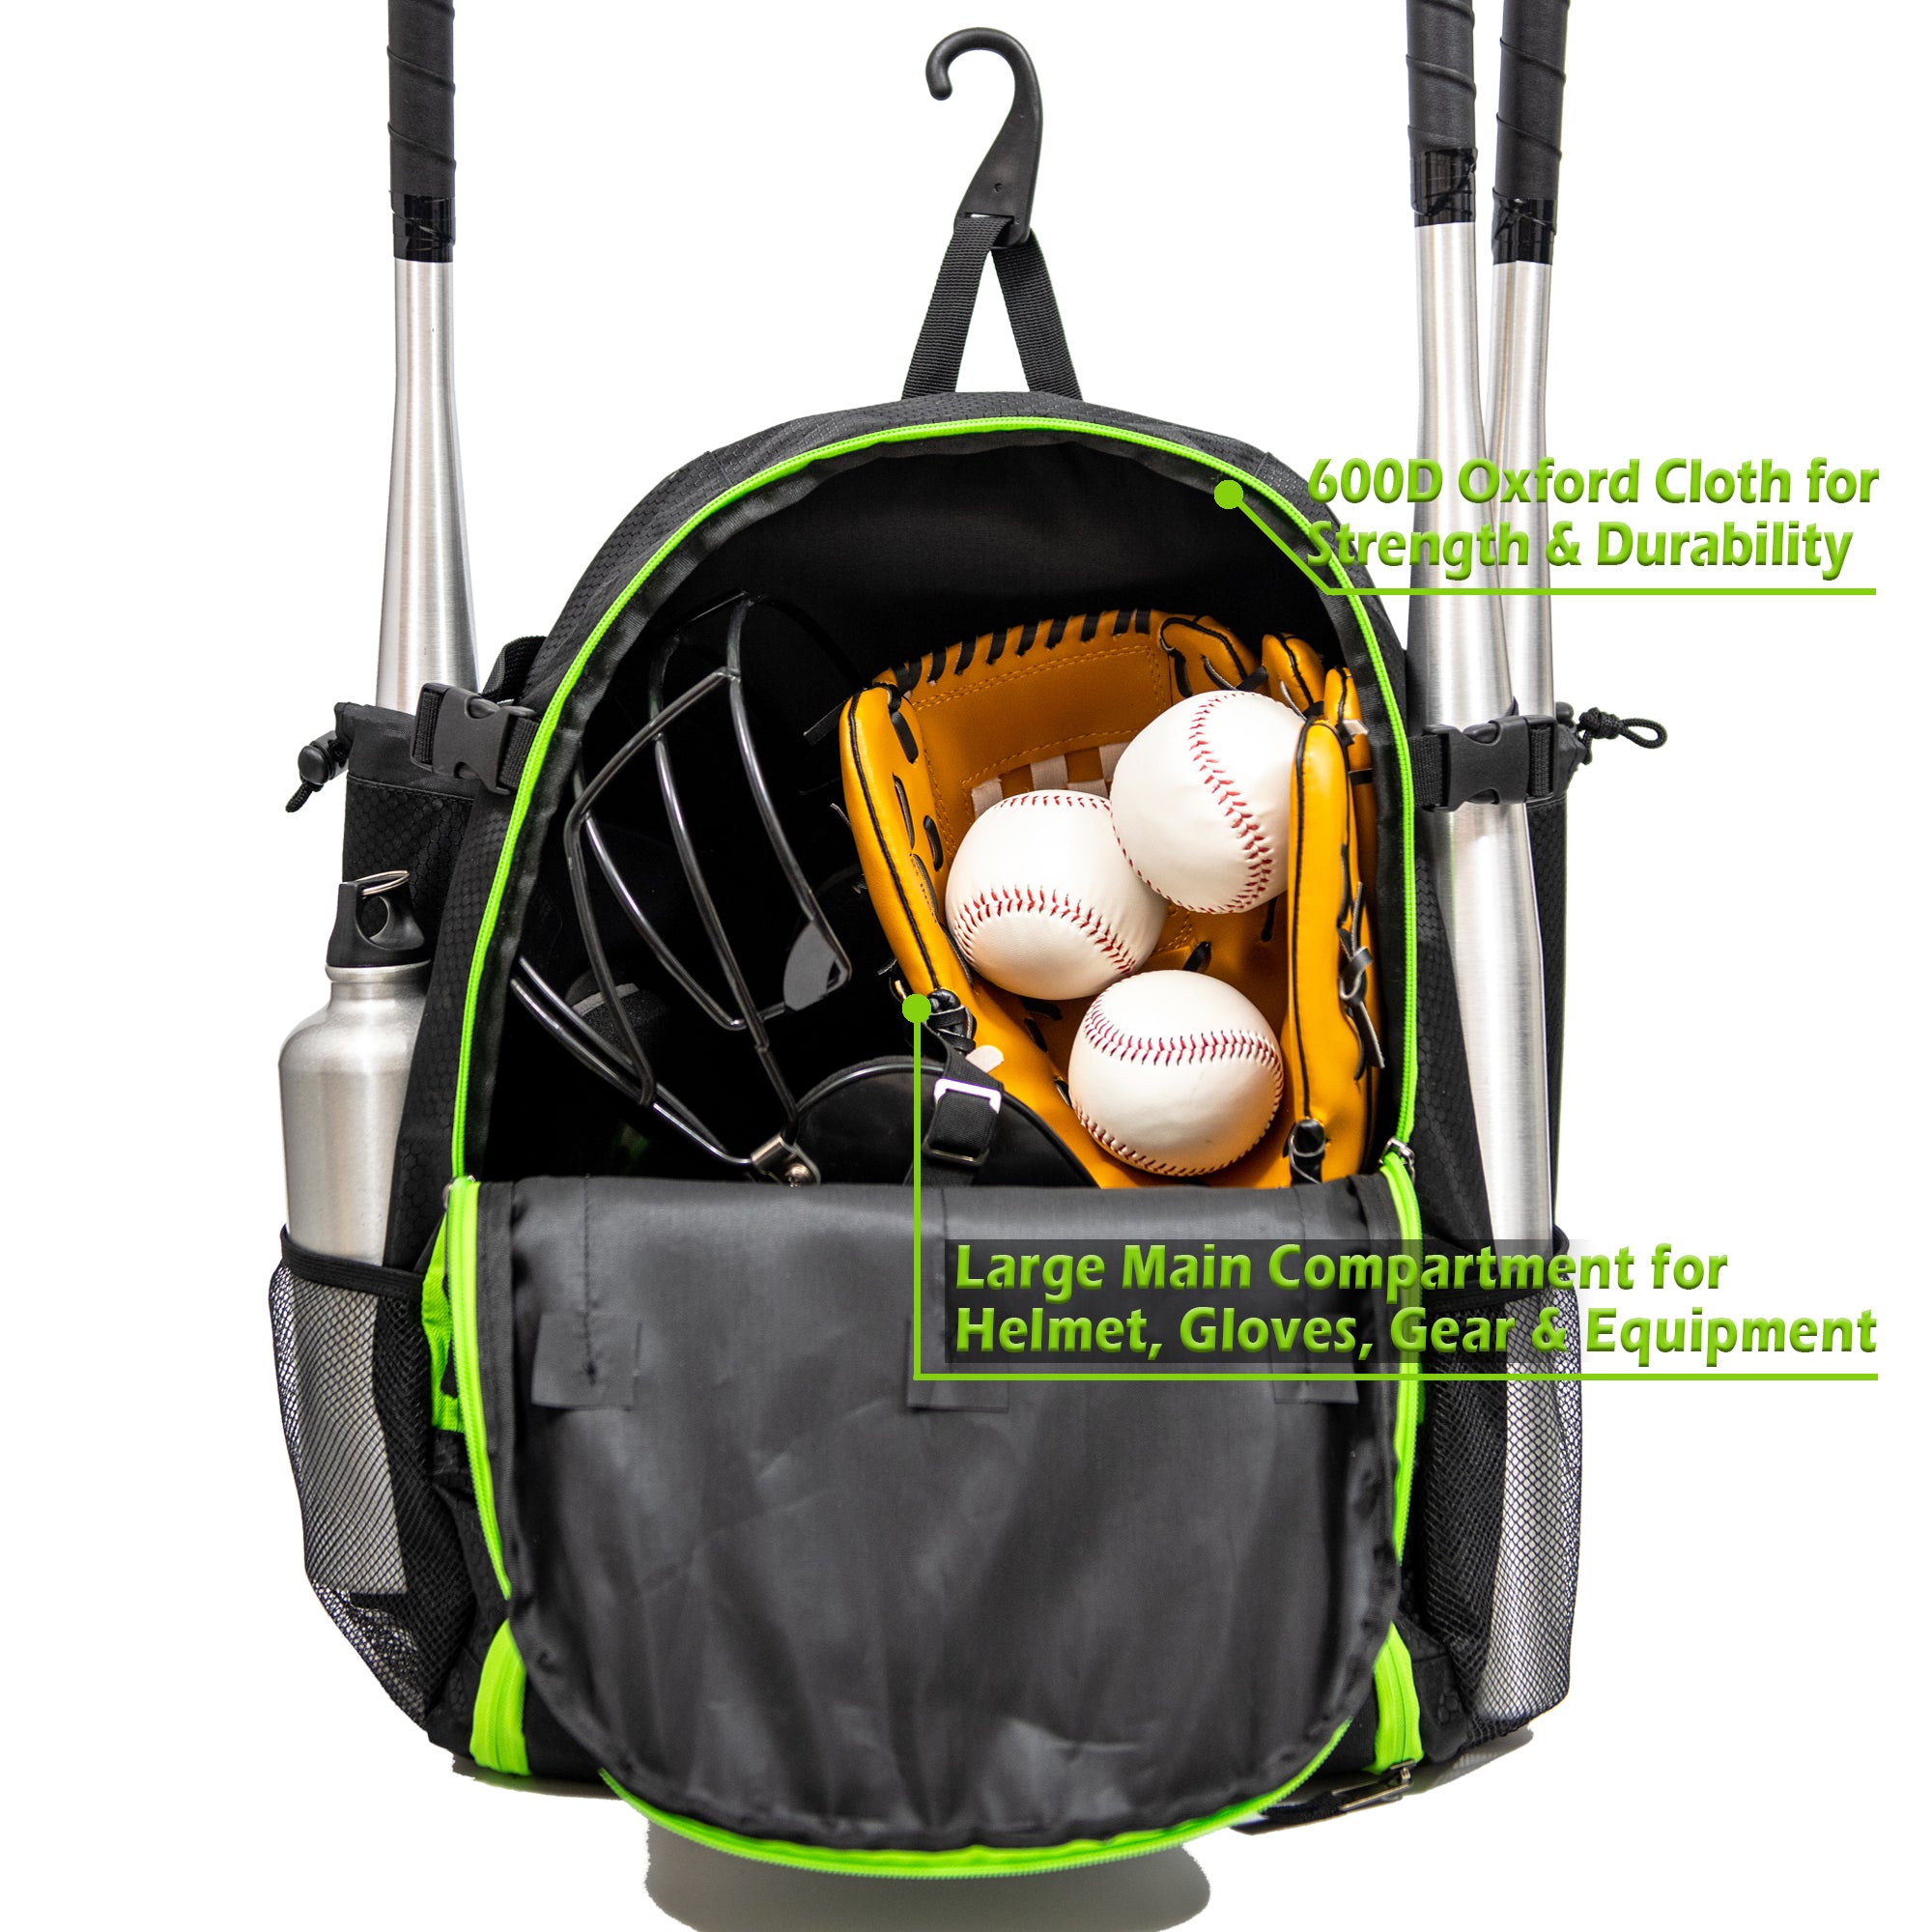 Ksports Baseball Backpack Black with Green Zipper